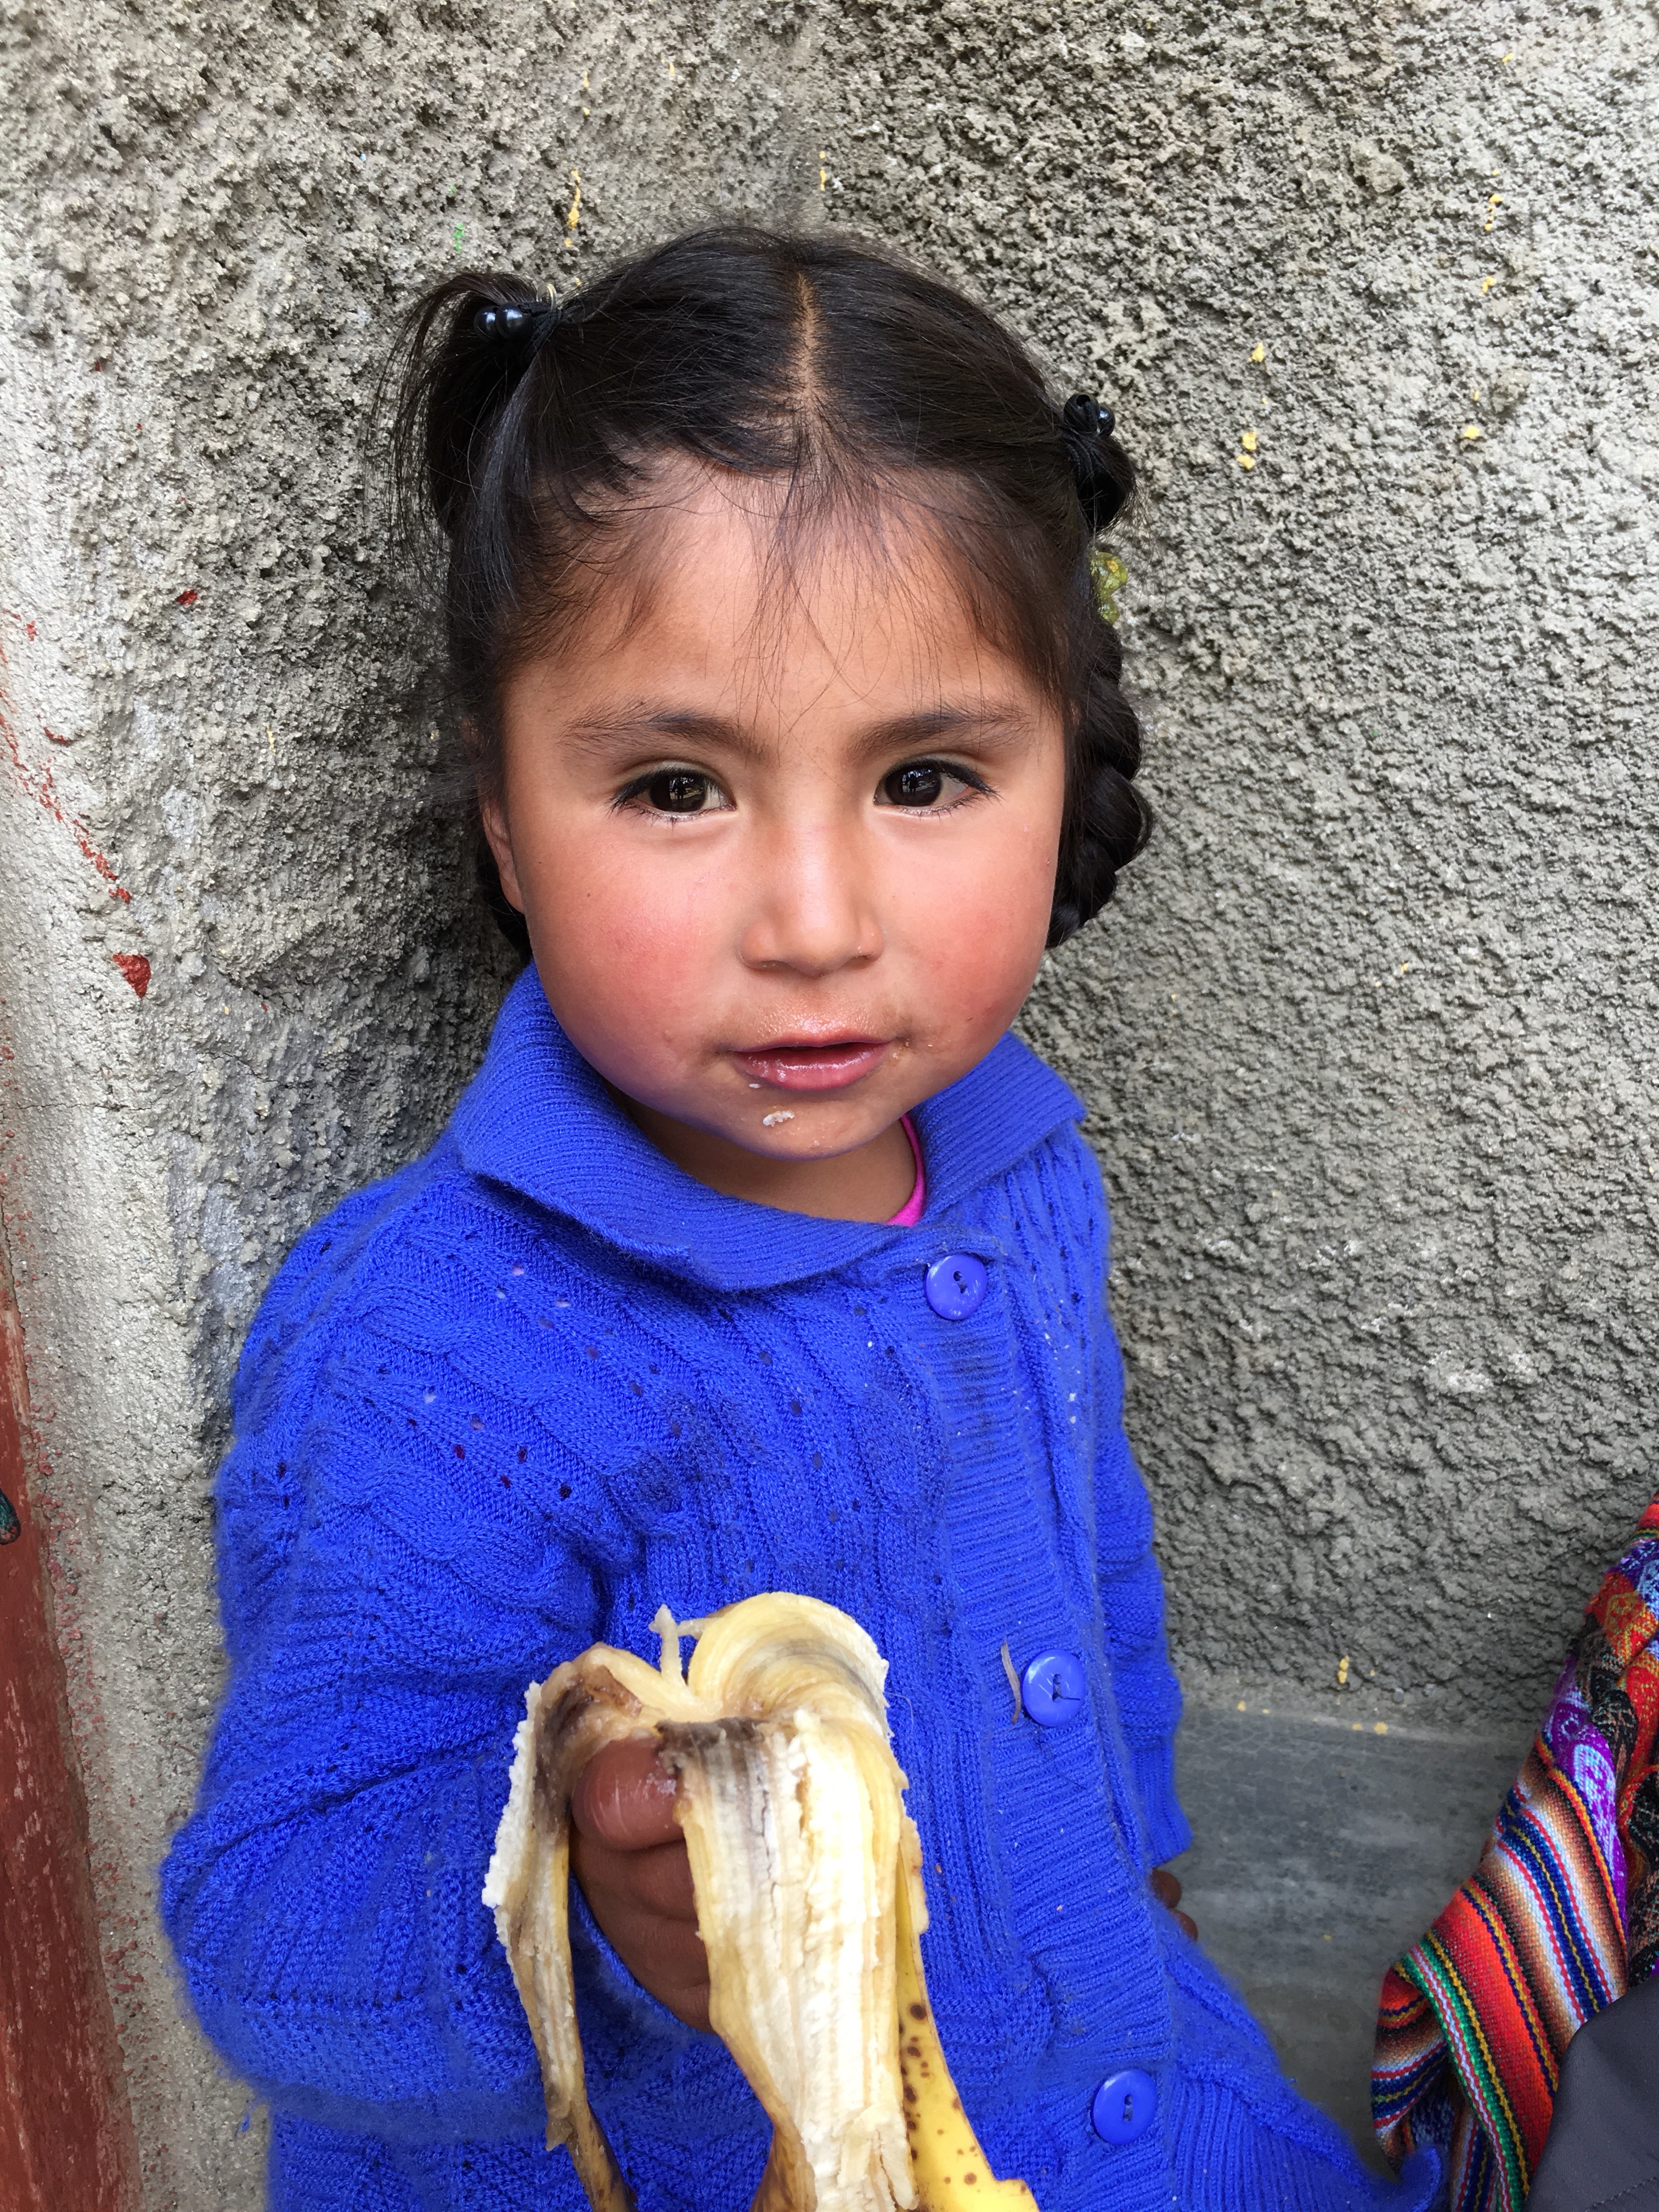 Me enamoré de esta niñita peruana...